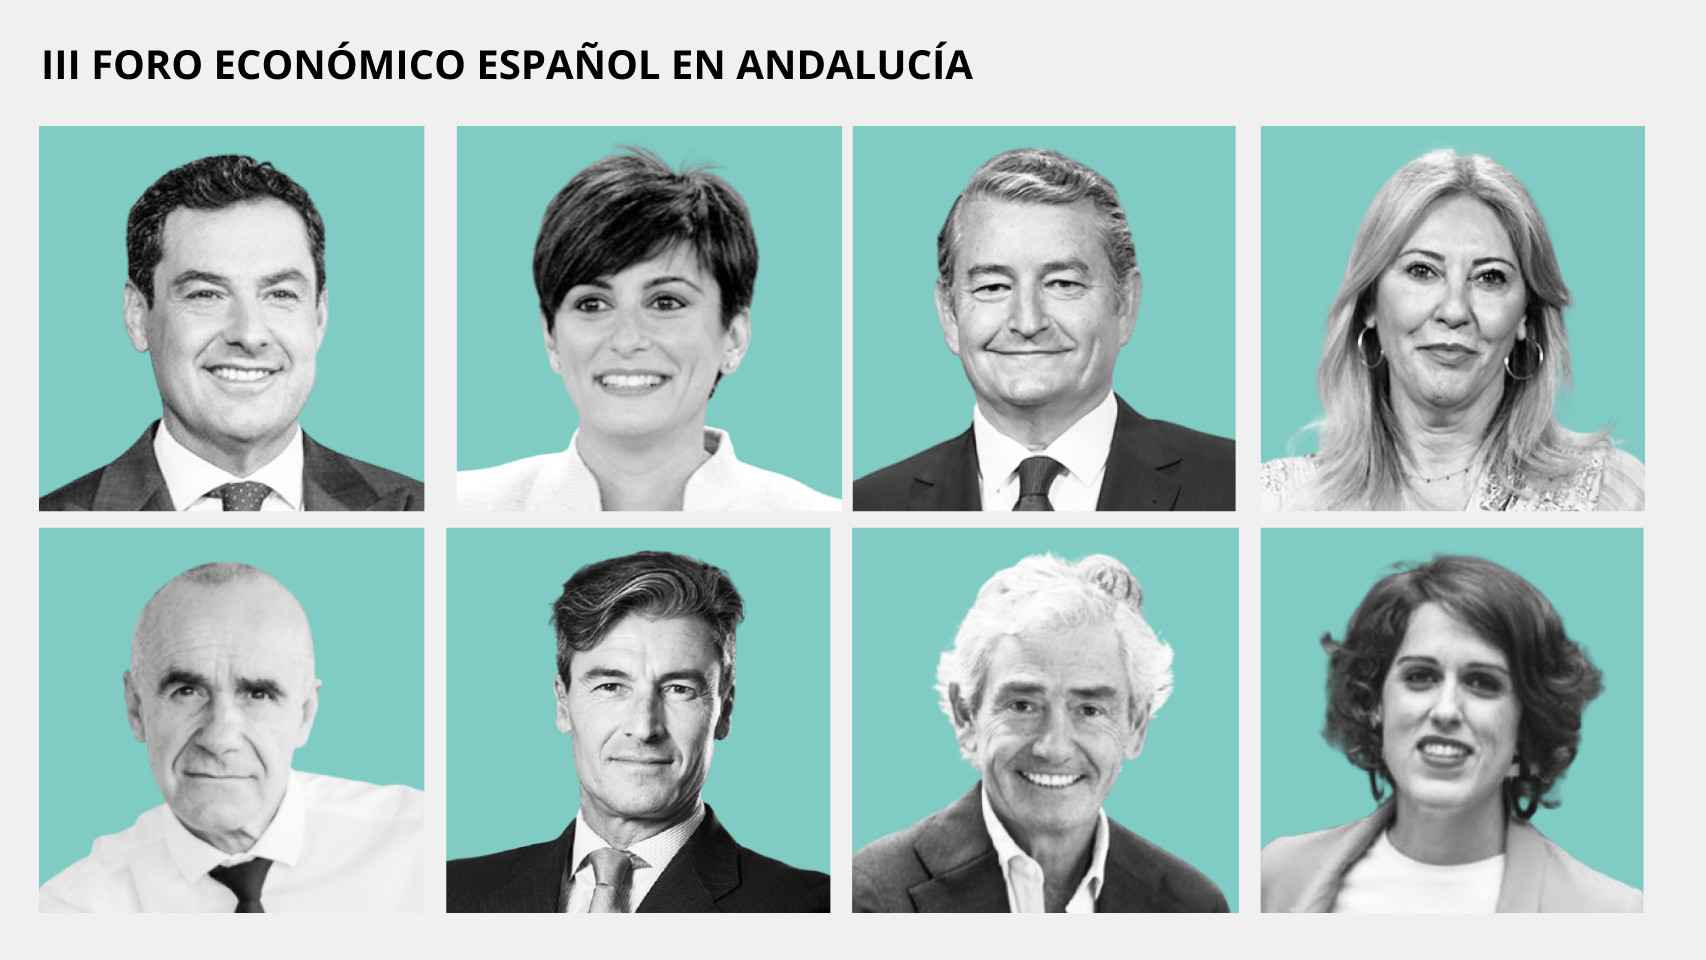 Juanma Moreno, Isabel Rodríguez, Antonio Sanz, Carolina España, Antonio Muñoz, Federico Molina, José María Pacheco y Laura Baena.